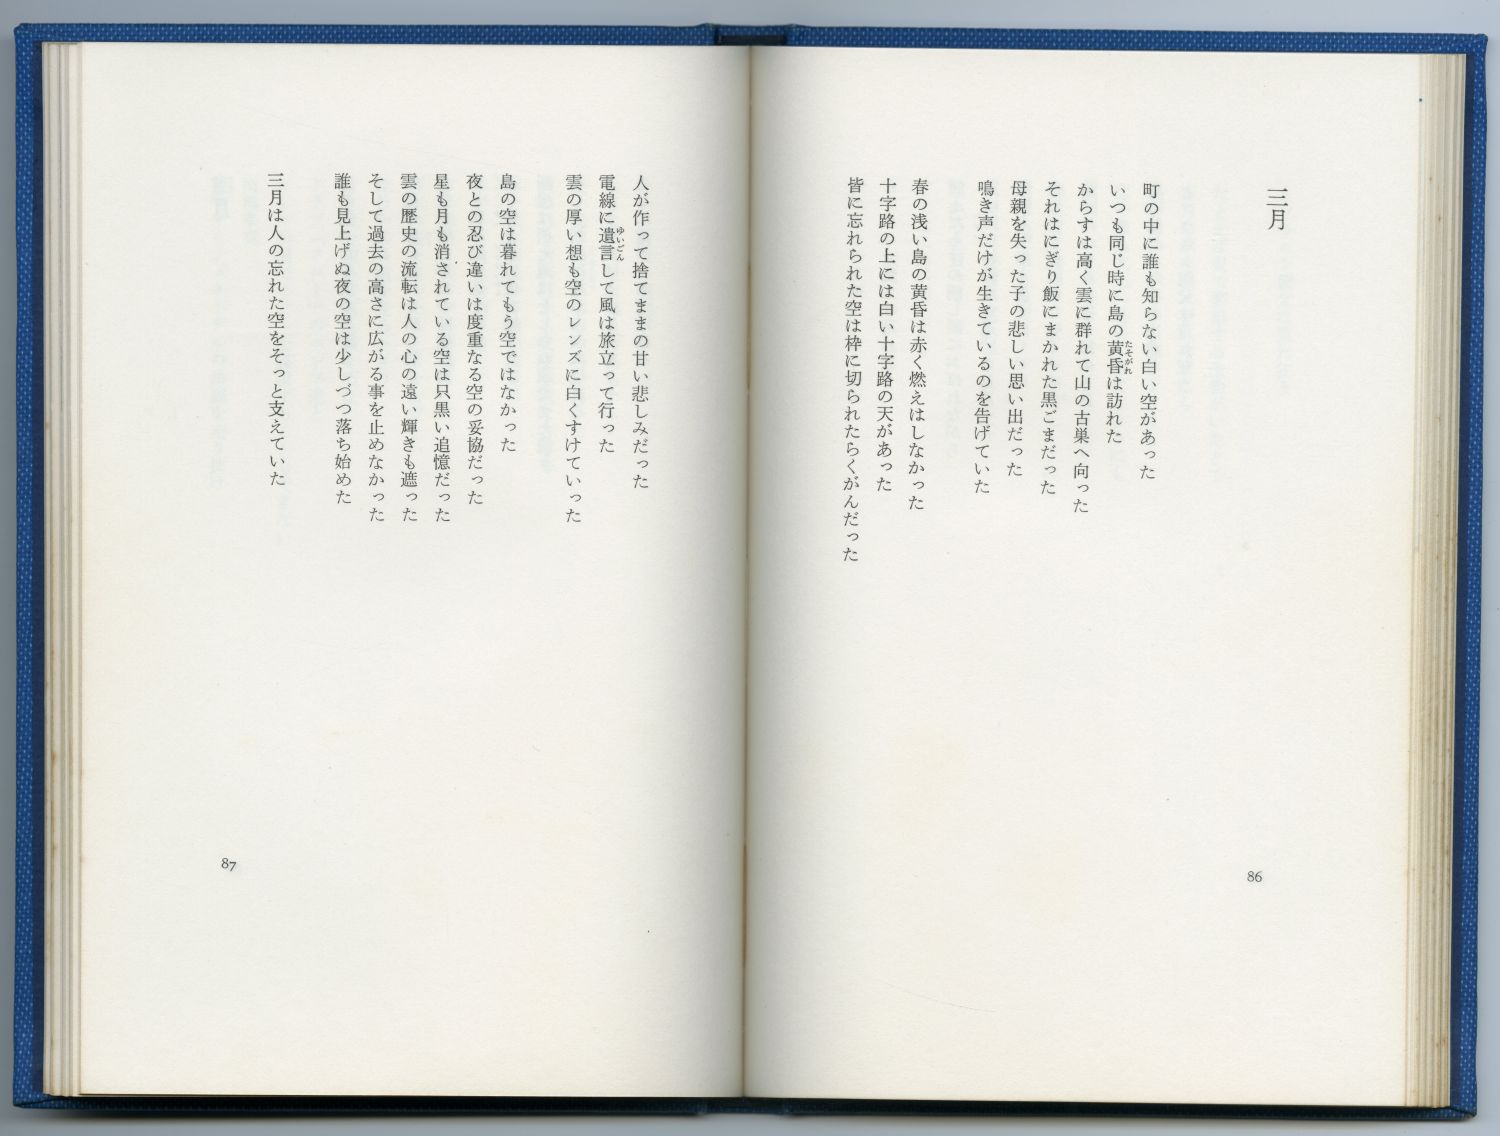 藤井令一『詩集　シルエットの島』（1976年、思潮社）のページから